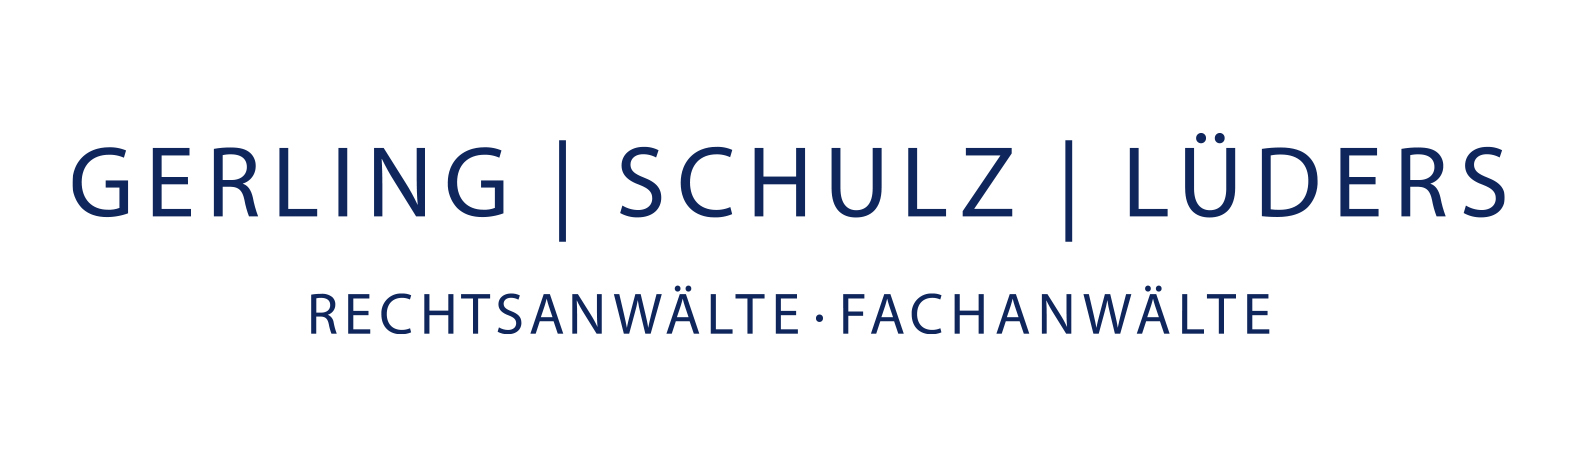 Gerling | Schulz | Lüders Rechtsanwälte – Fachanwälte